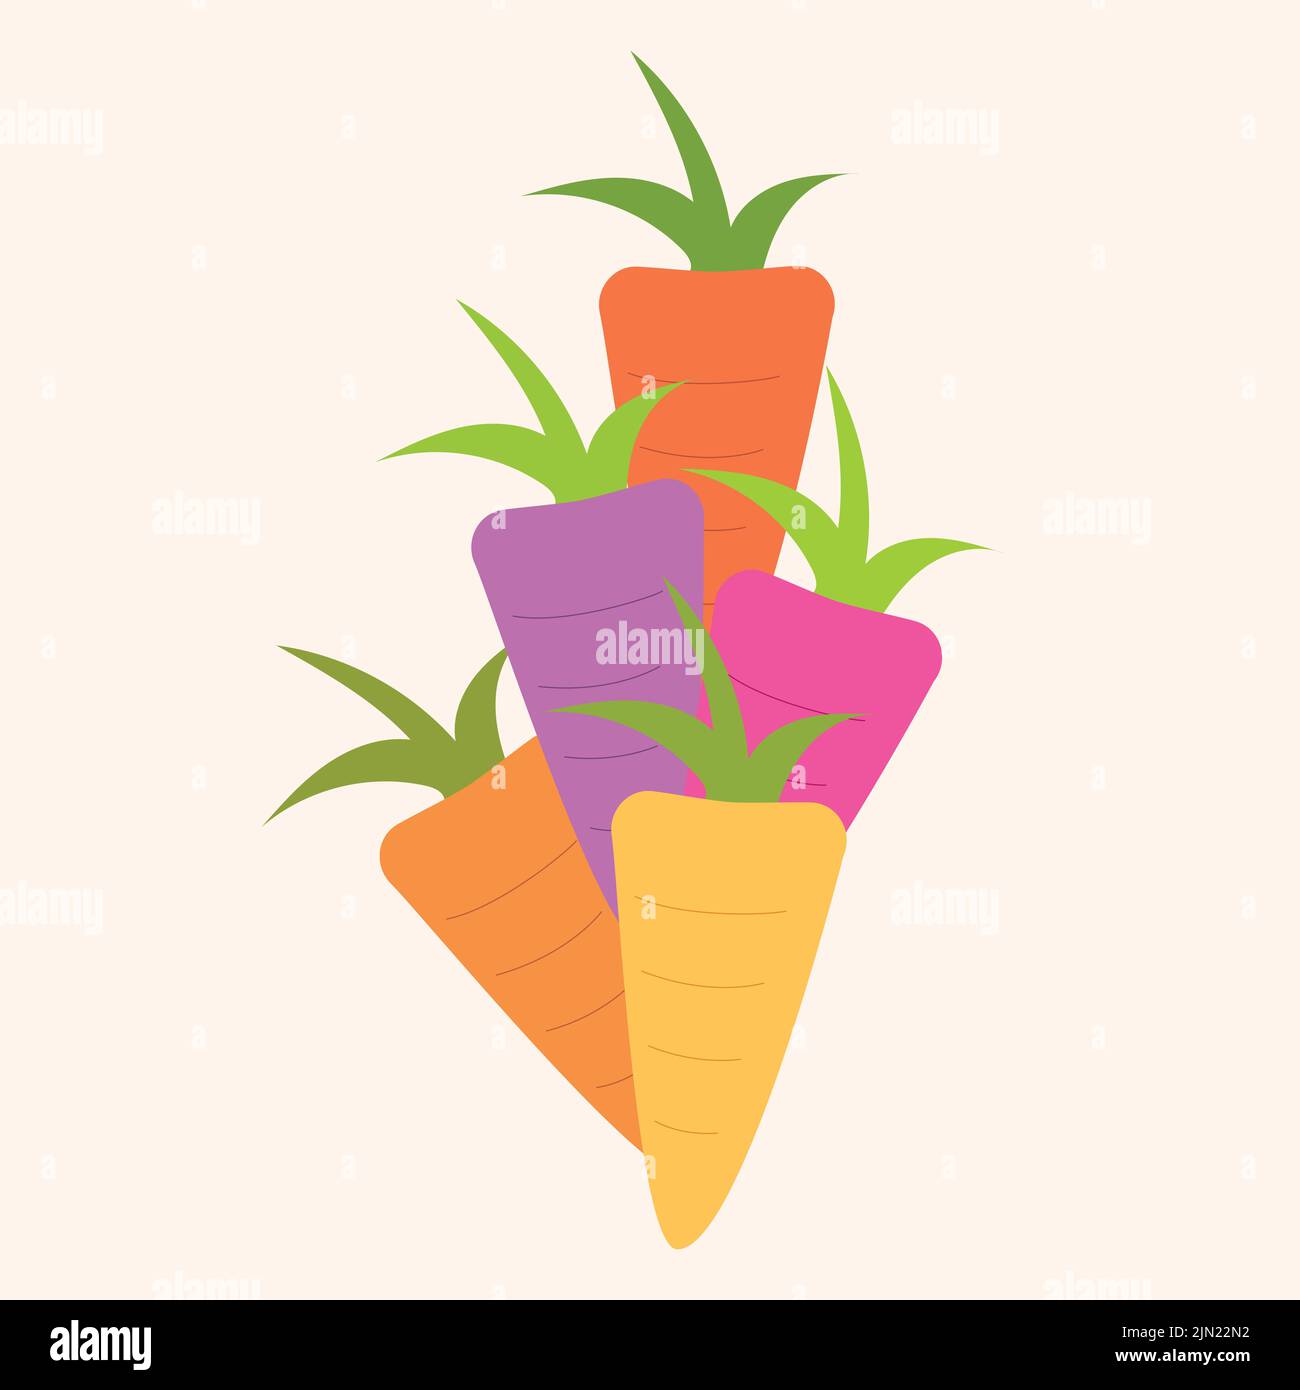 Illustrazione di un gruppo di carote heirloom di colori diversi, concetto di sano cibo biologico vegano e agricoltura biologica a base di semi nativi. Illustrazione Vettoriale